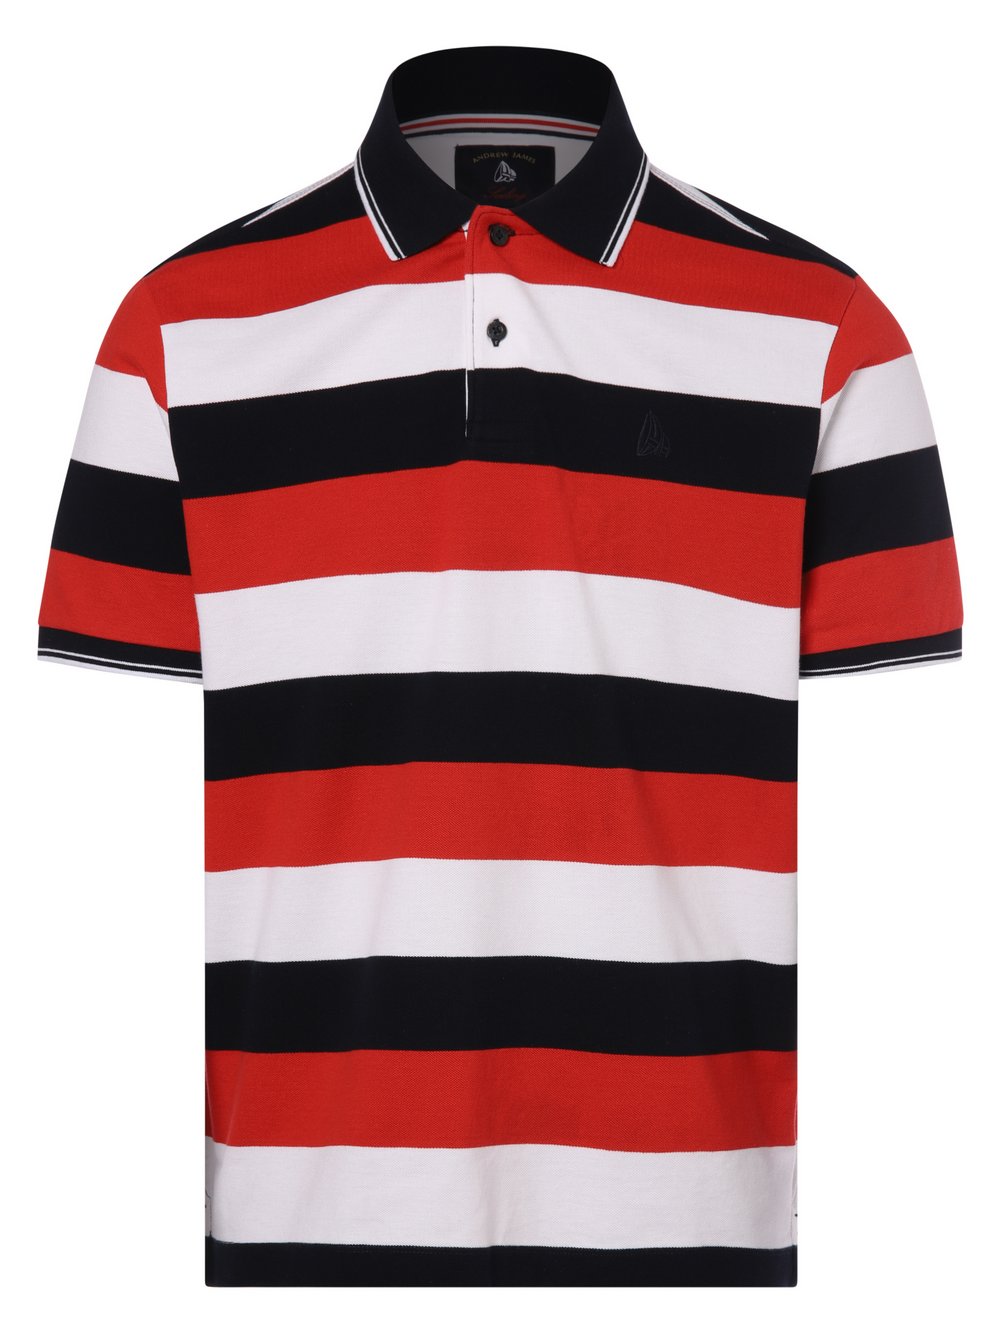 Andrew James Sailing - Męska koszulka polo, czerwony|biały